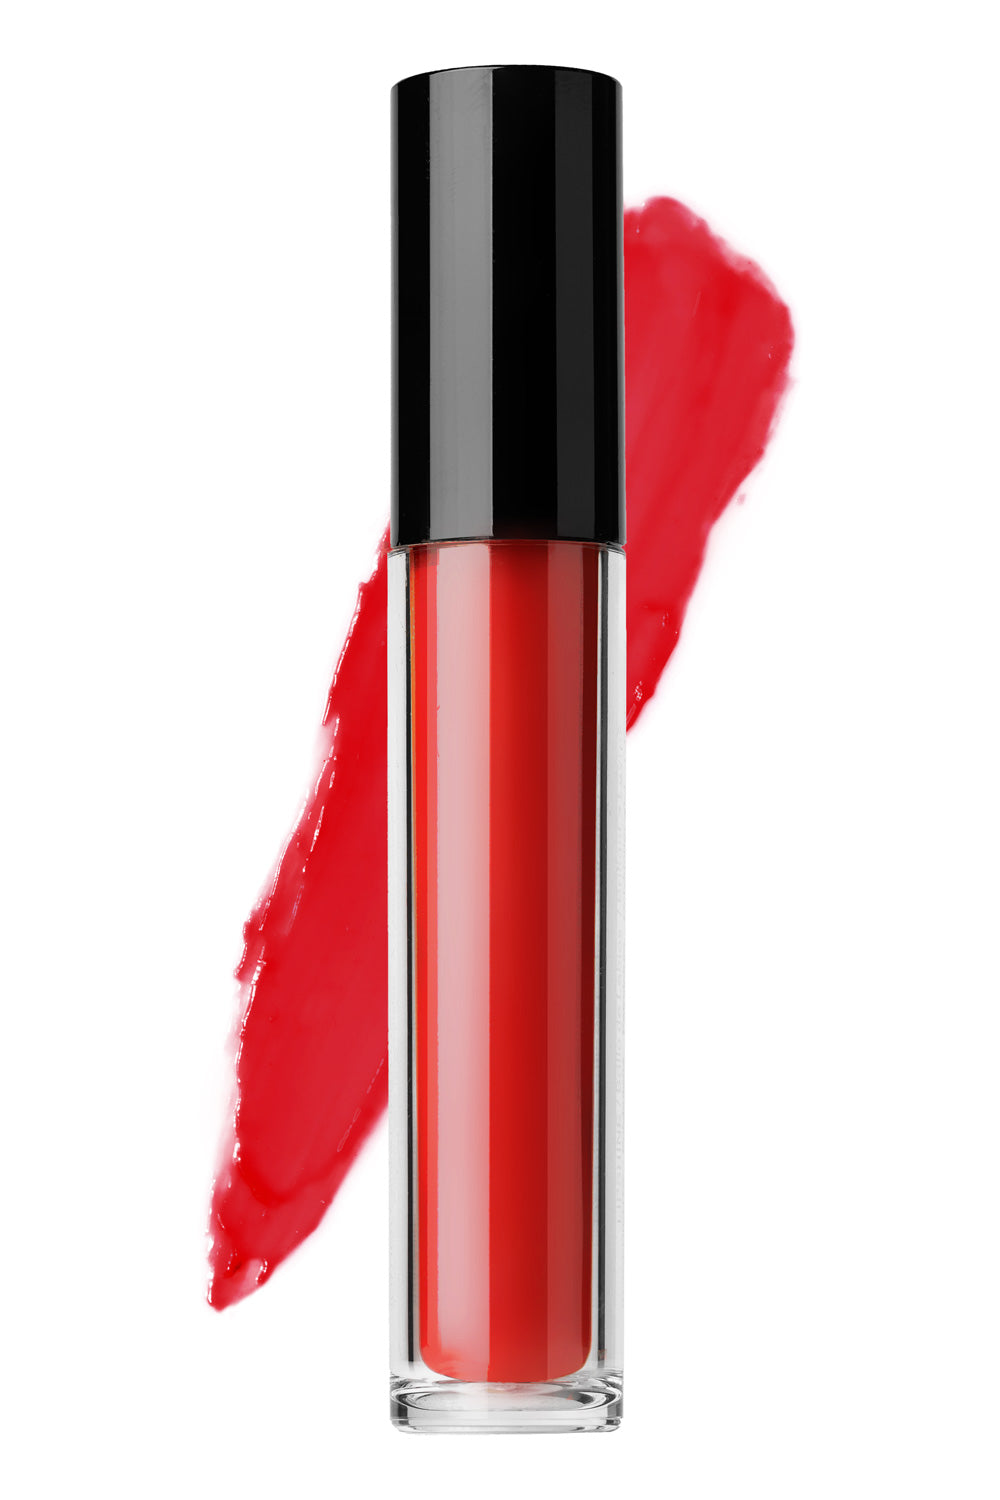 Tart Cherry LG15- Type 4 Lip Gloss